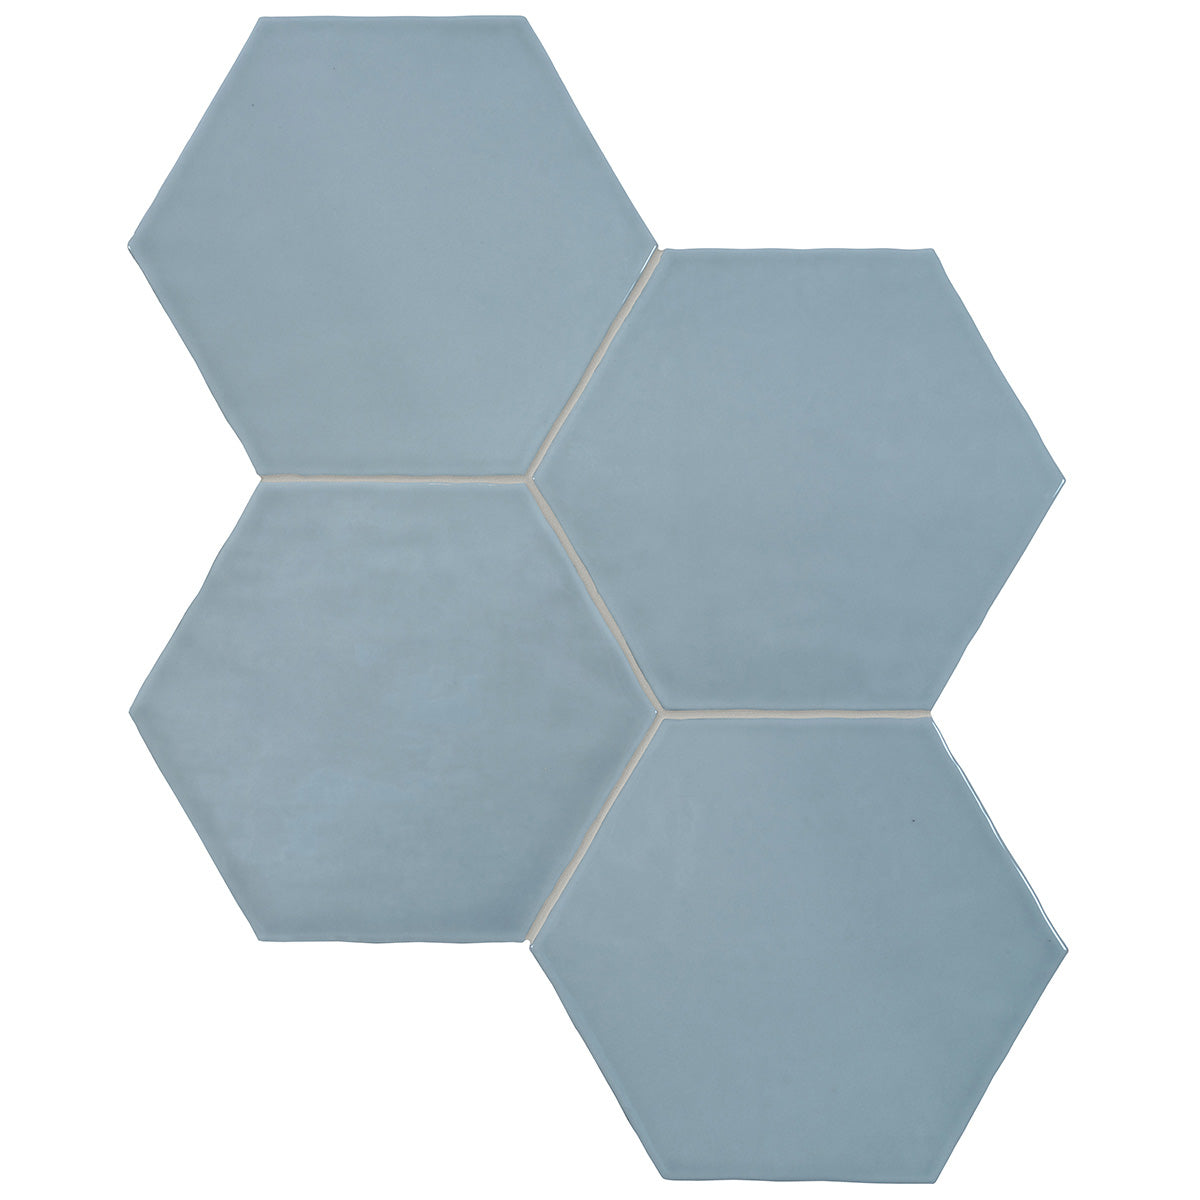 Anatolia - Teramoda 6 in. Hexagon Glazed Ceramic Wall Tile - Sky Glossy